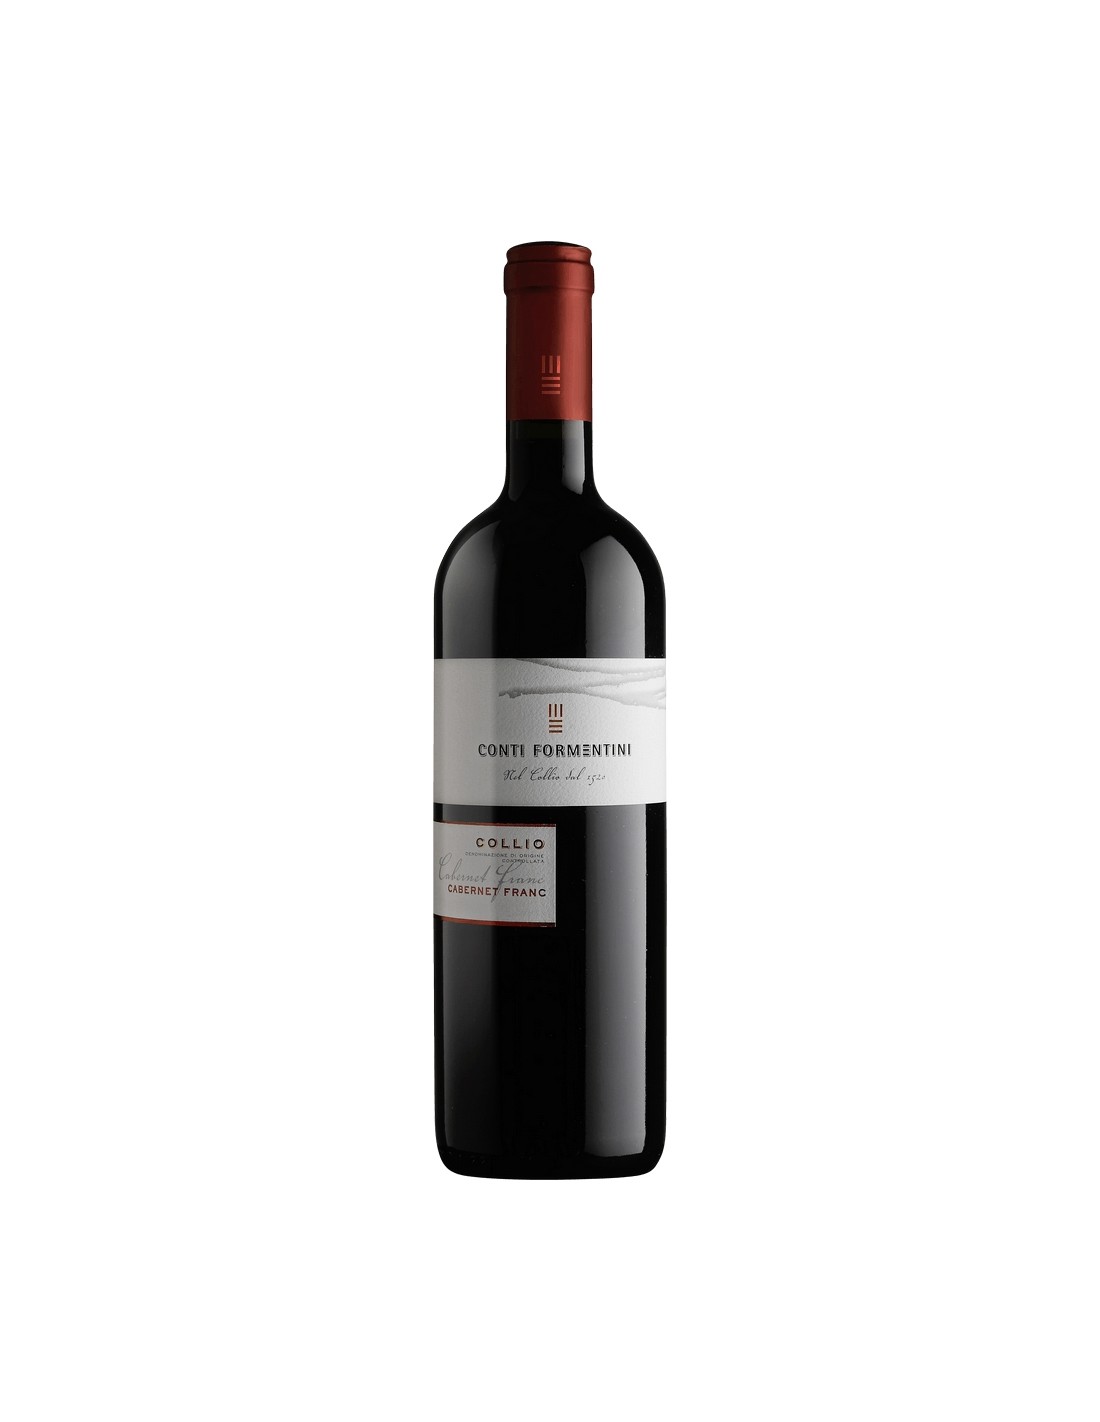 Vin rosu sec, Cabernet Franc, Conti Formentini Collio, 13% alc., 0.75L, Italia alcooldiscount.ro